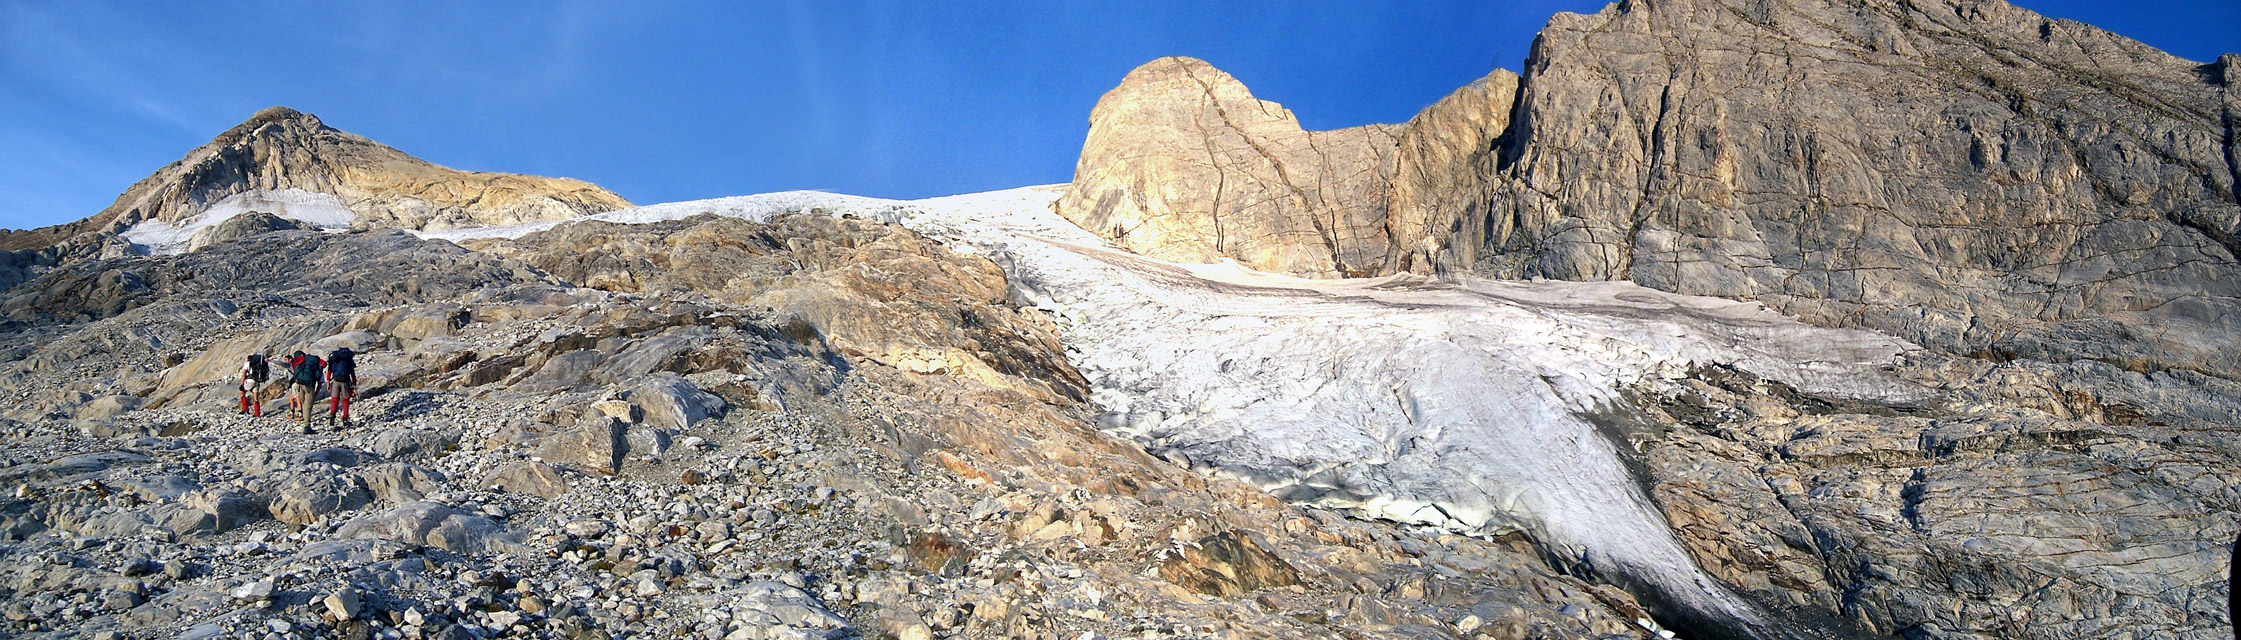 Aproximación al glaciar del Vignemale